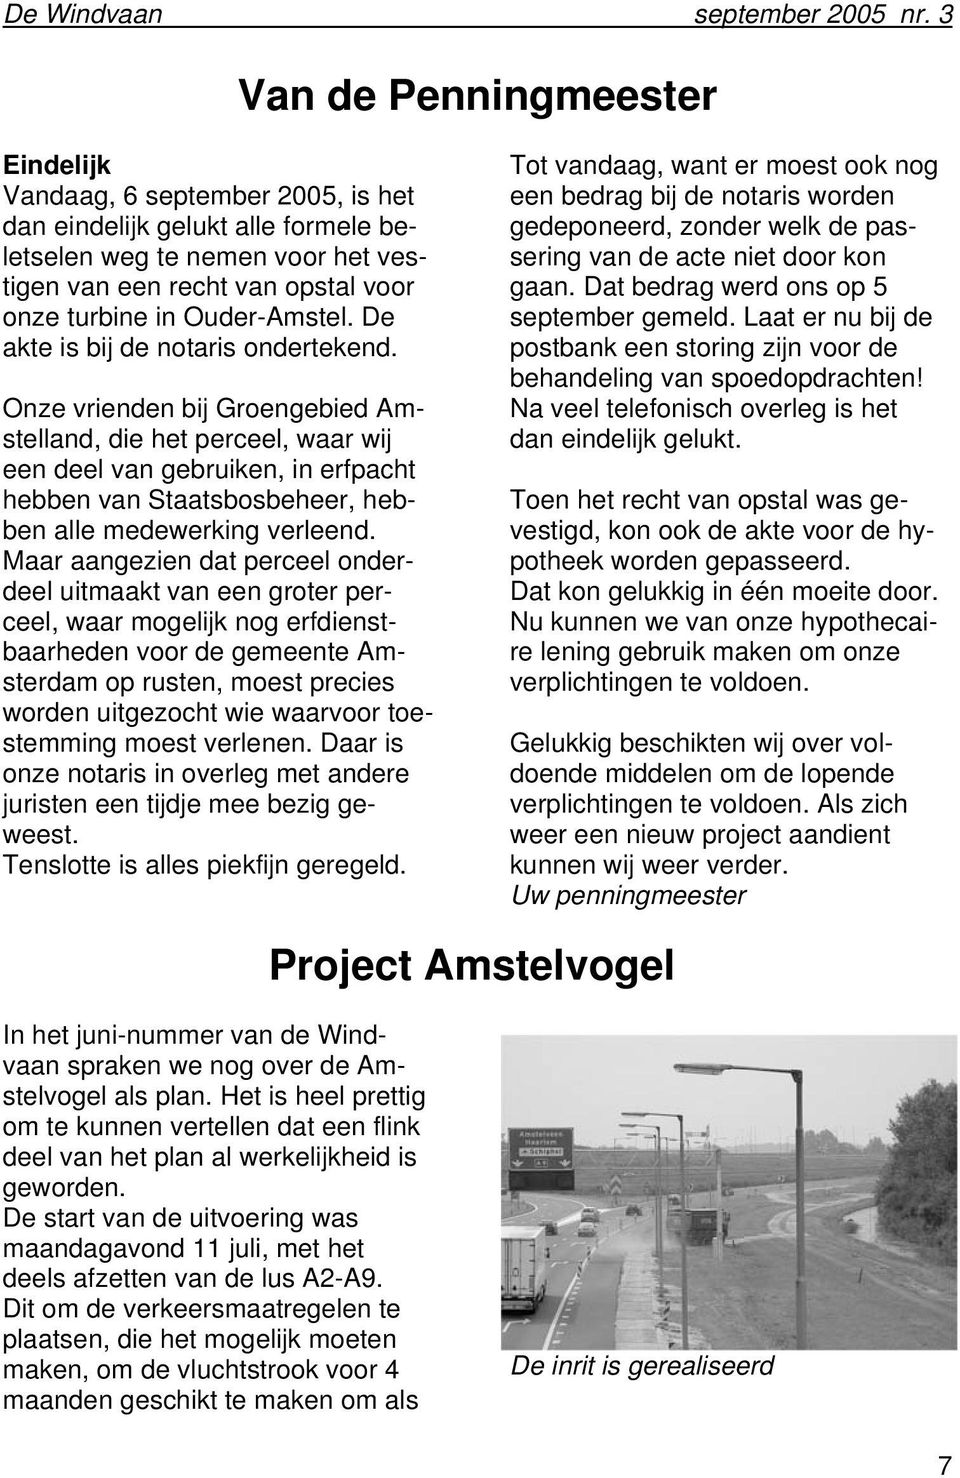 Onze vrienden bij Groengebied Amstelland, die het perceel, waar wij een deel van gebruiken, in erfpacht hebben van Staatsbosbeheer, hebben alle medewerking verleend.